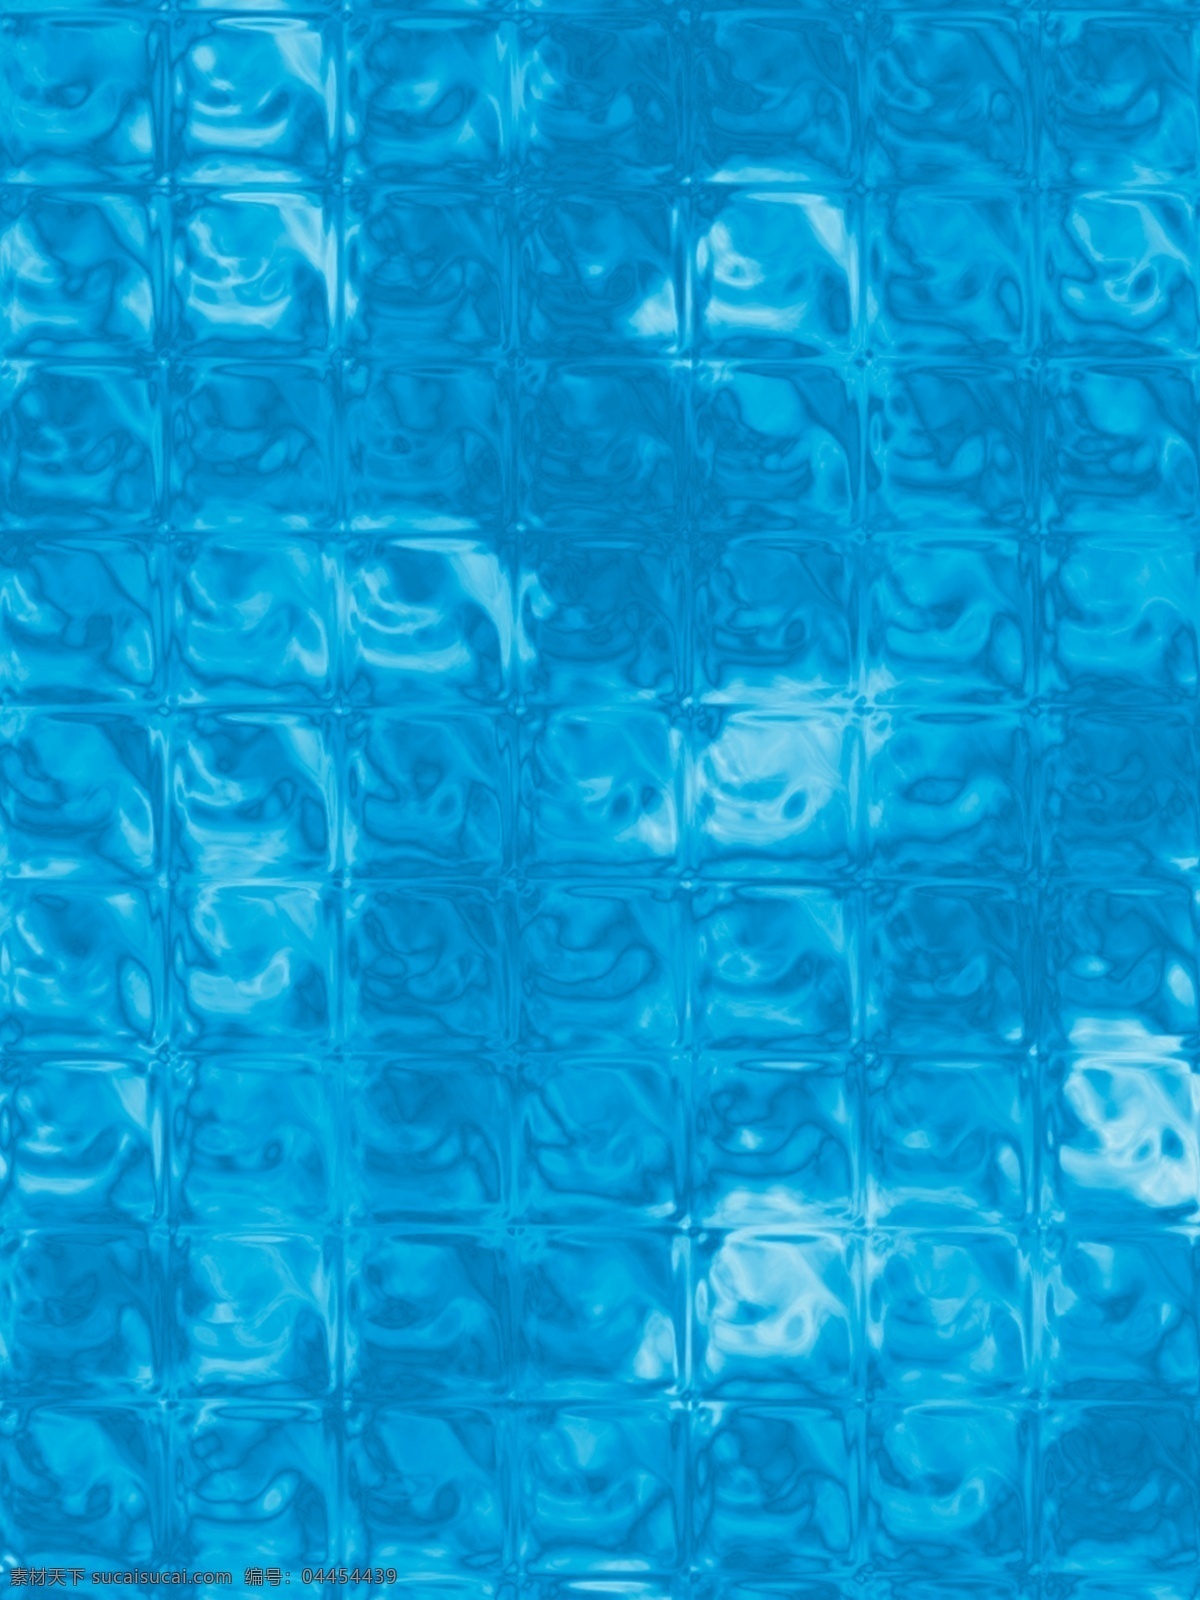 蓝色 透明 质感 冰块 背景 冰块背景 水纹 透明质感 蓝色背景